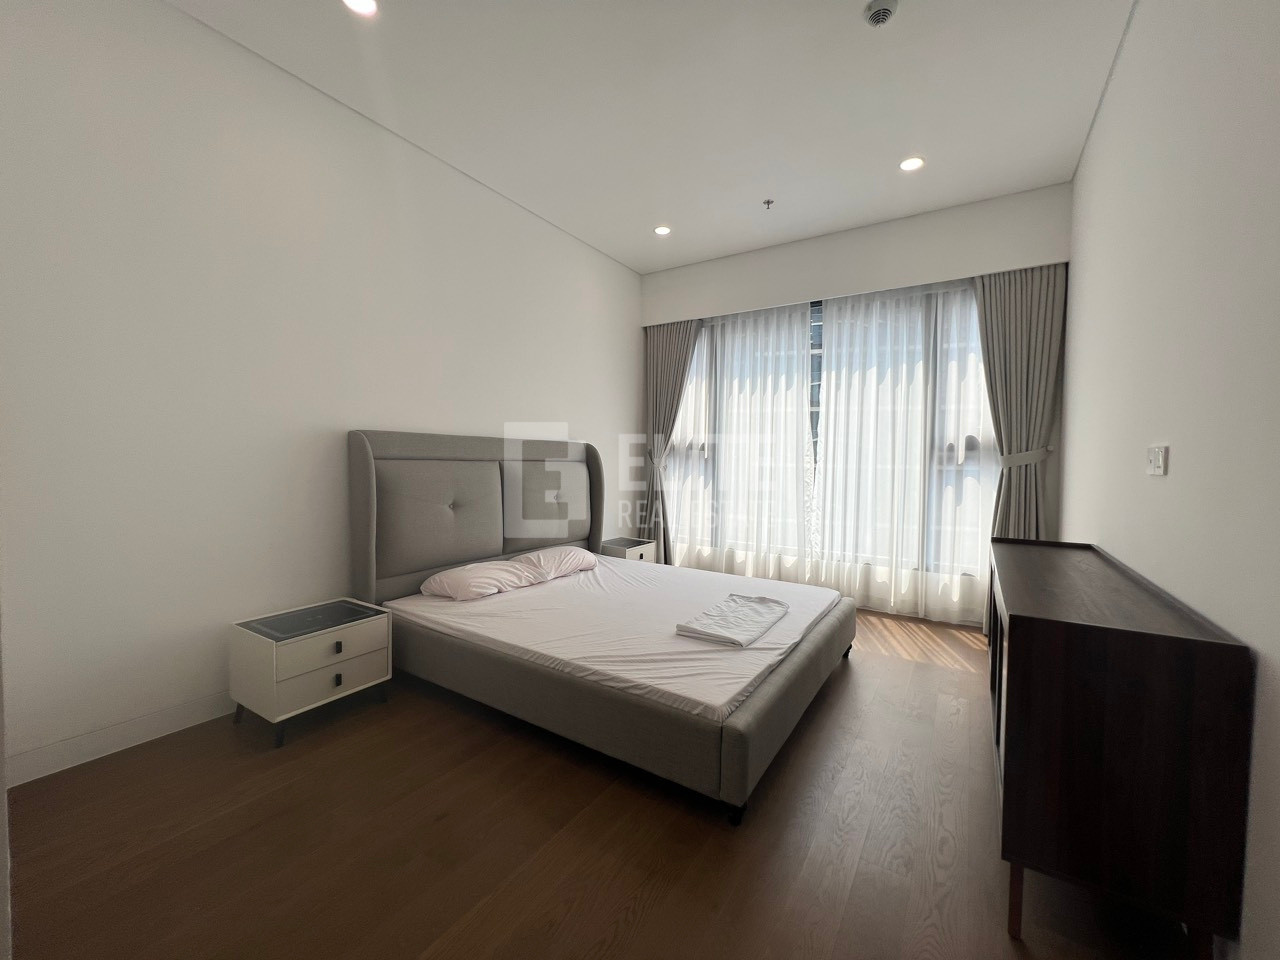 THE RIVER - cho thuê căn hộ 3 phòng ngủ đầy đủ nội thất chất lượng cao có thang máy dành riêng cho căn hộ